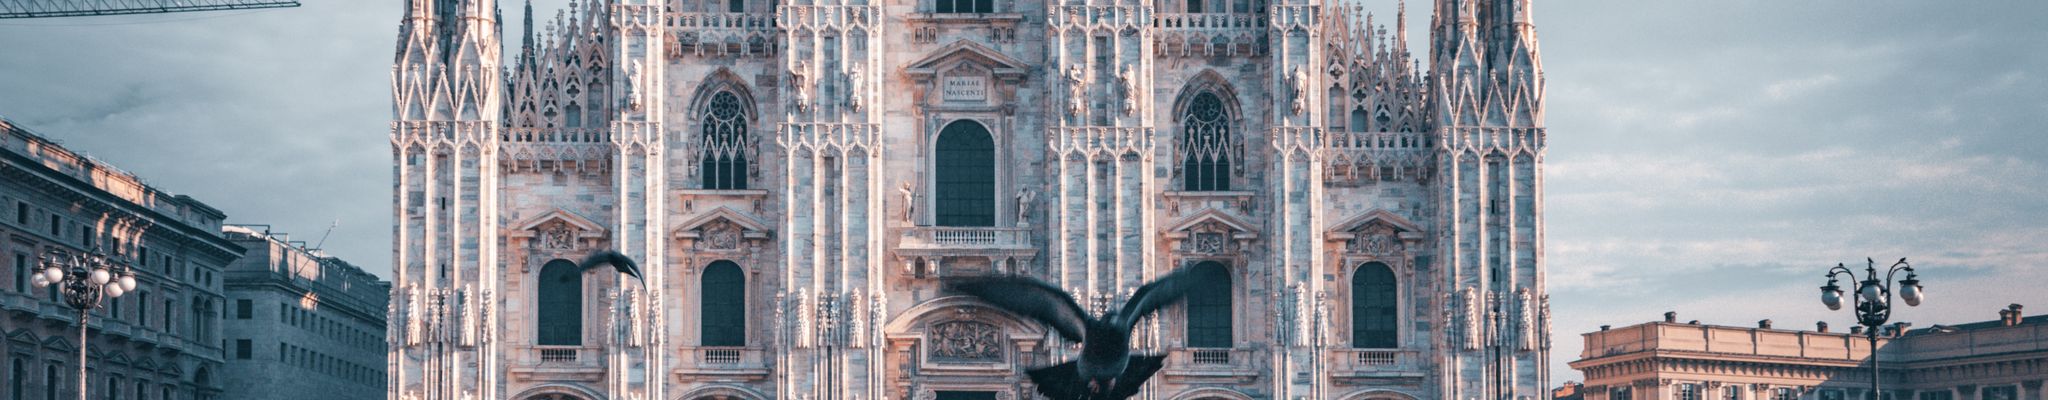 Catedral de Milão - Duomo